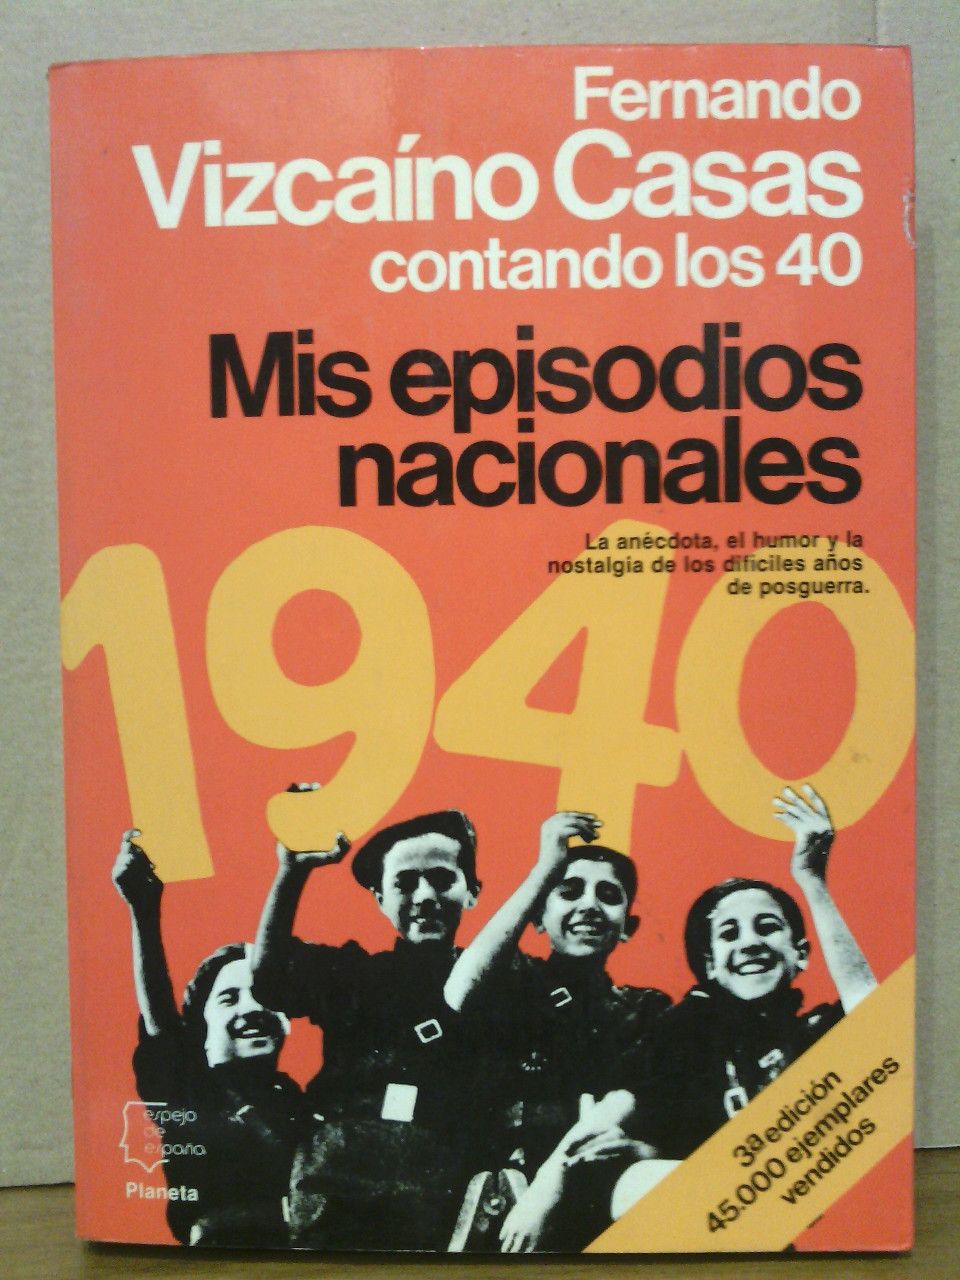 VIZCAINO CASAS, Fernando - Contando los 40: Mis episodios nacionales